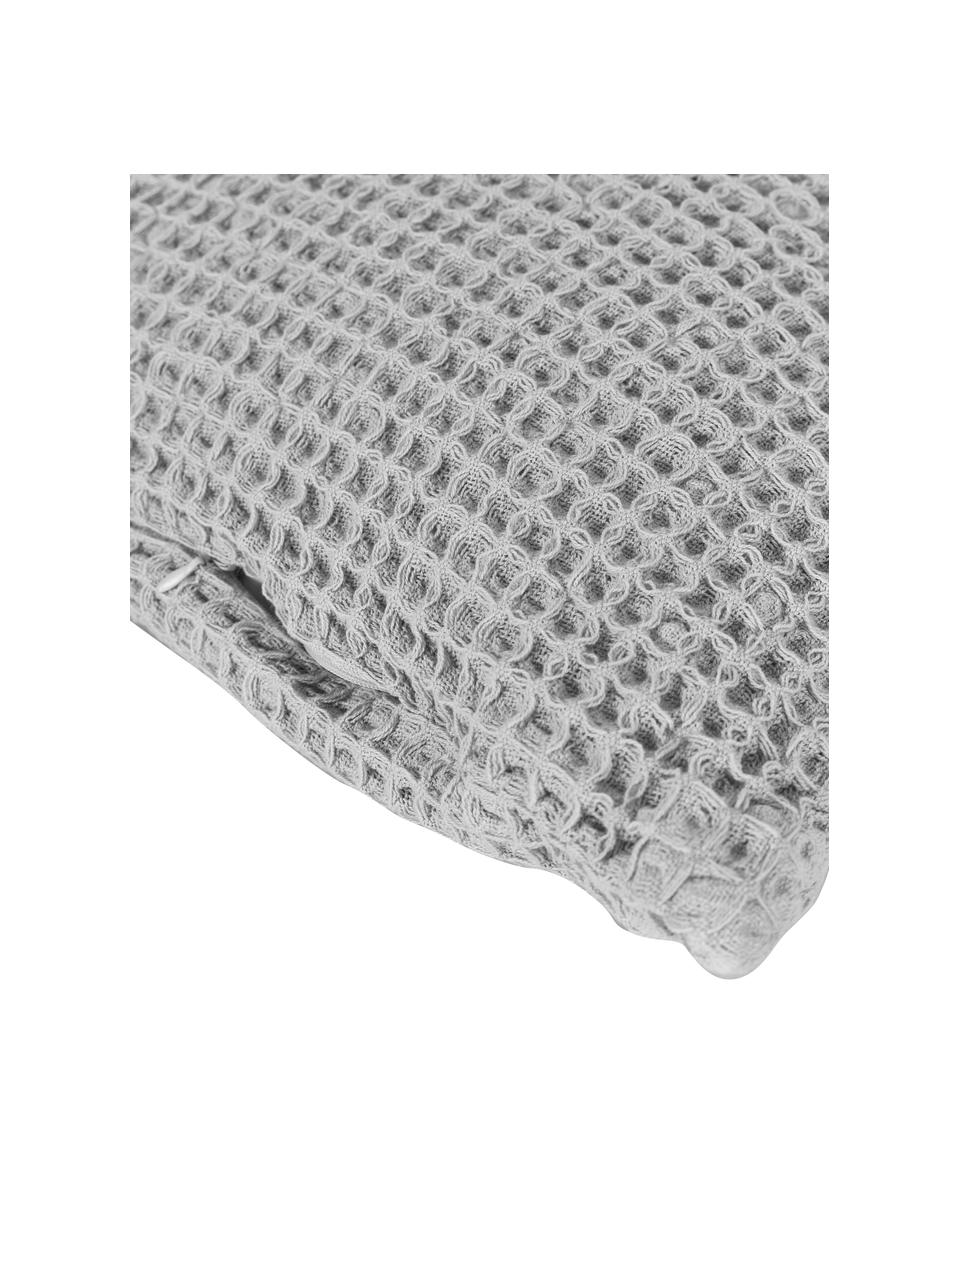 Poszewka na poduszkę z bawełny Lois, 100% bawełna, Szary, S 50 x D 50 cm